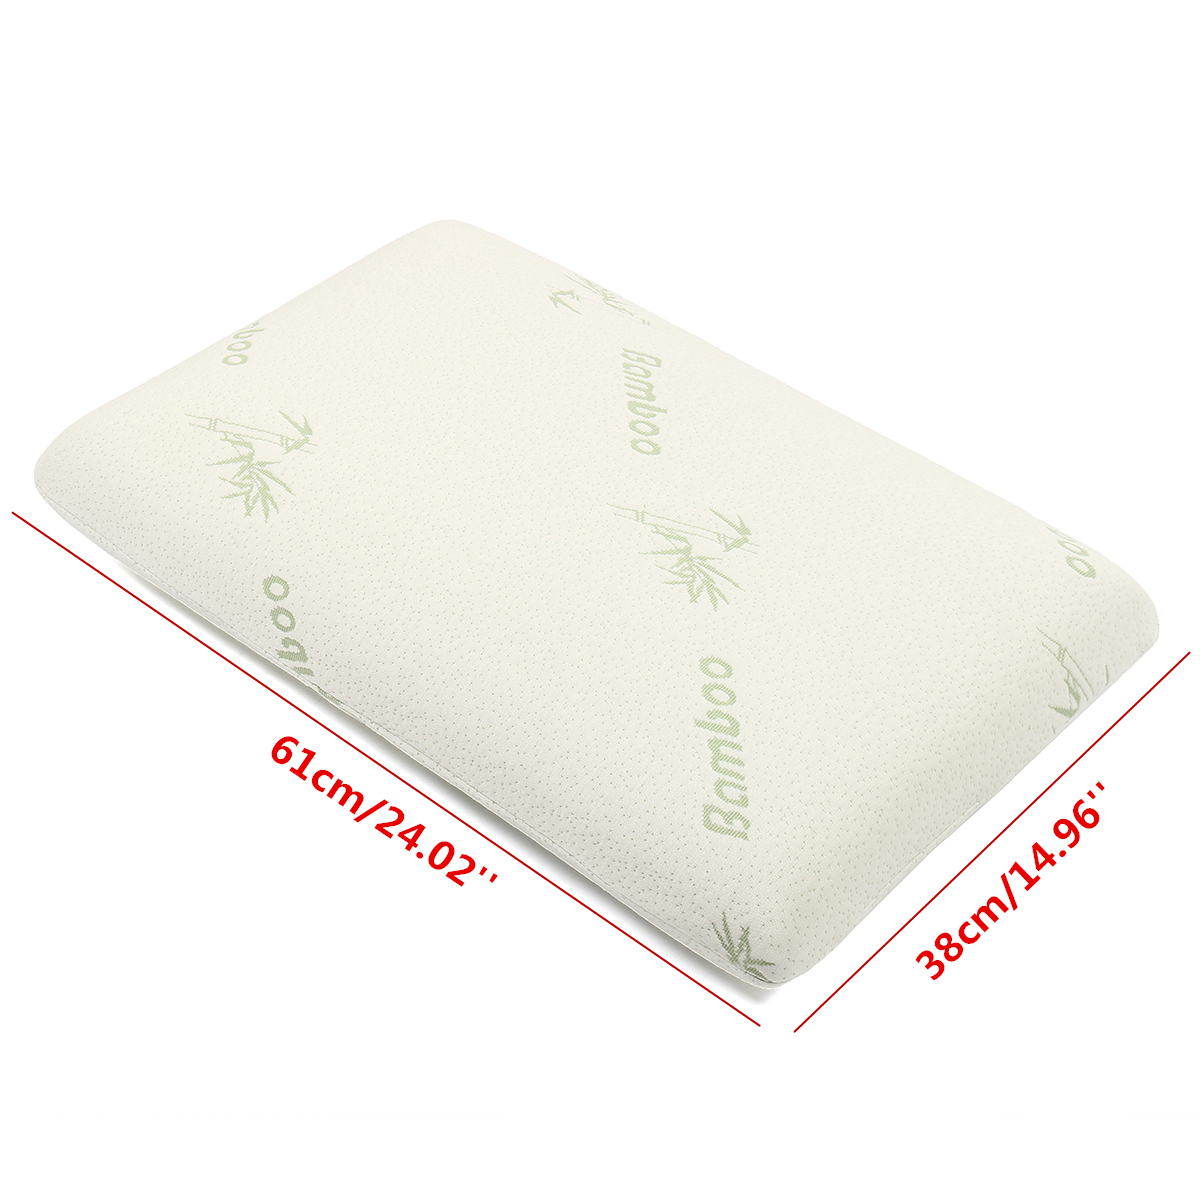 Bamboo-Fabric-Pillow-Memory-Foam-Filler-Pressure-Relief-AntibacterialampAnti-Mite-1391830